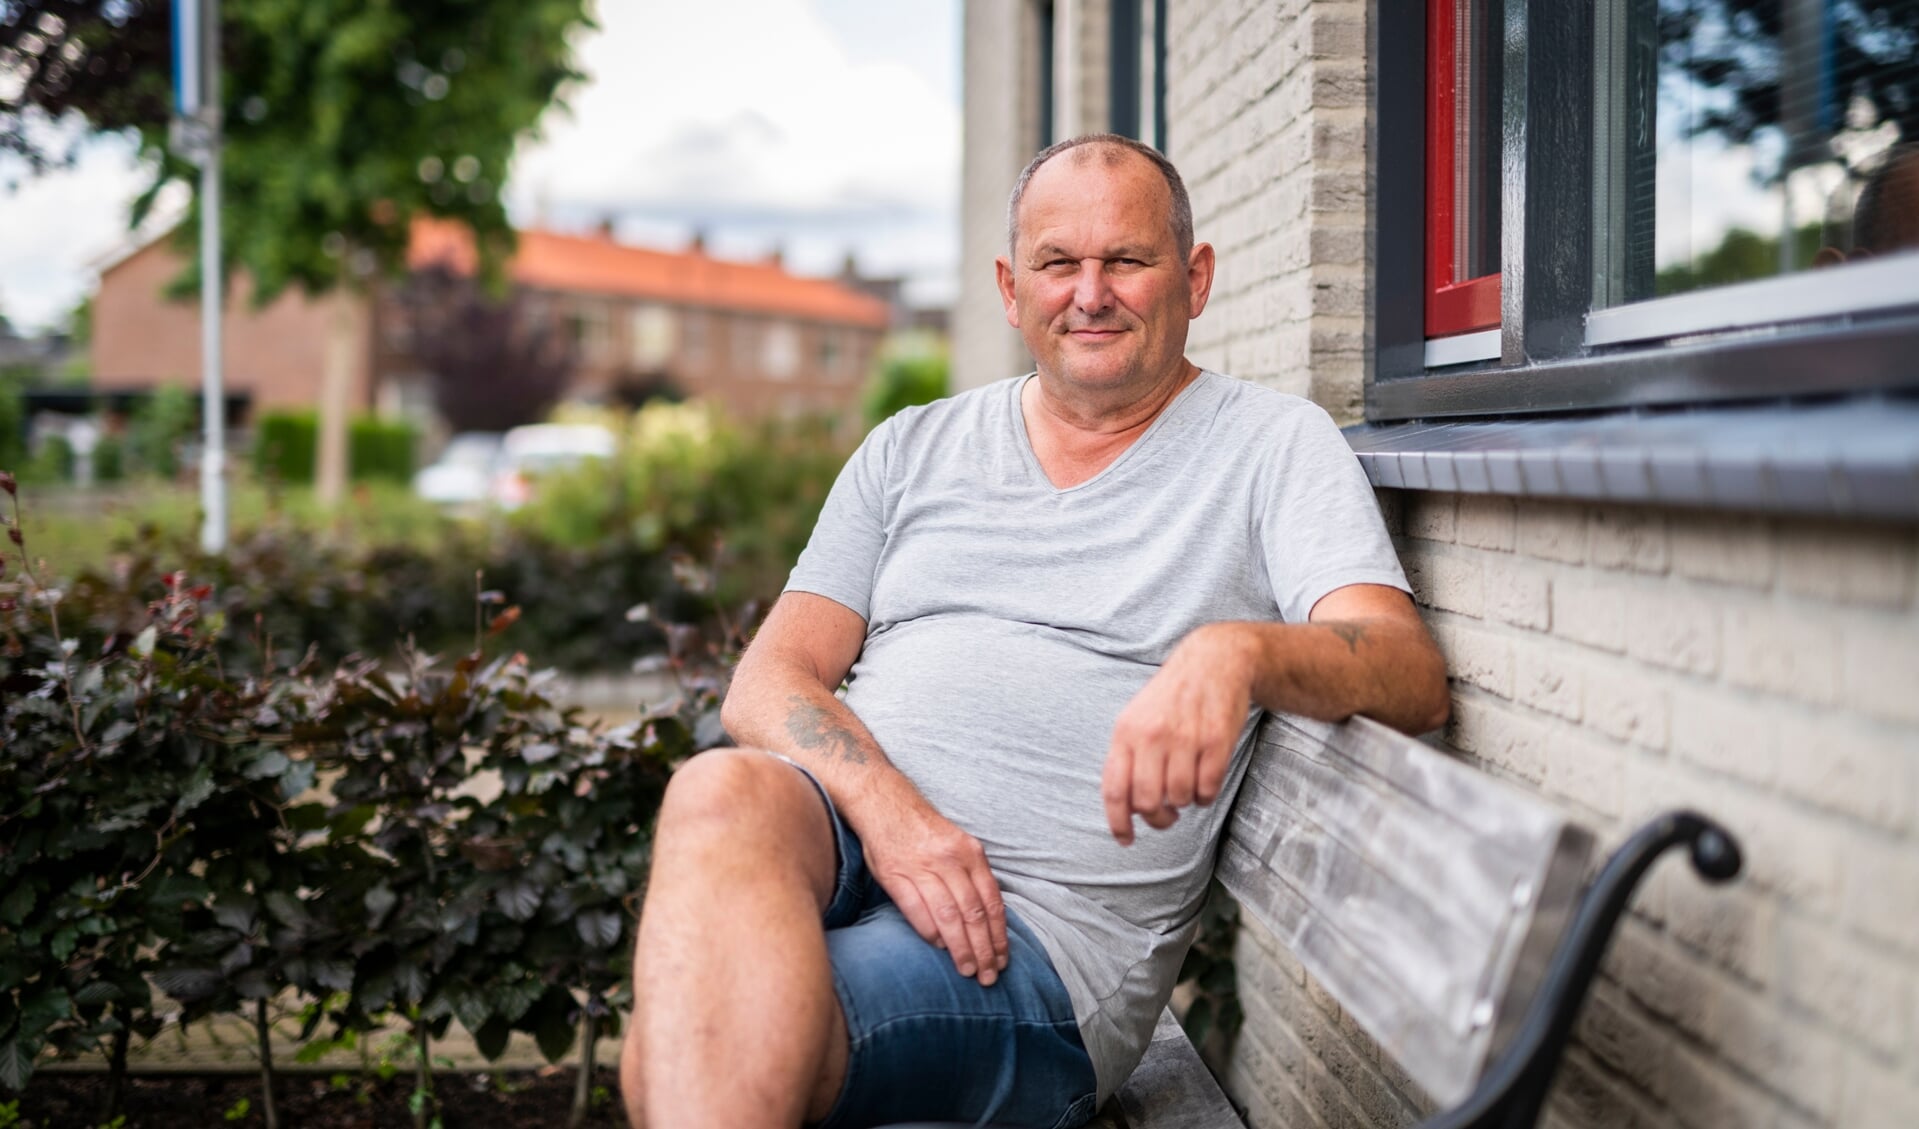 Henk de Gans werkt weer na een ernstige hersenbloeding. ,,De chirurg zei dat er niet veel mensen met zo’n hersenbloeding zijn die nog aan het werk komen.''